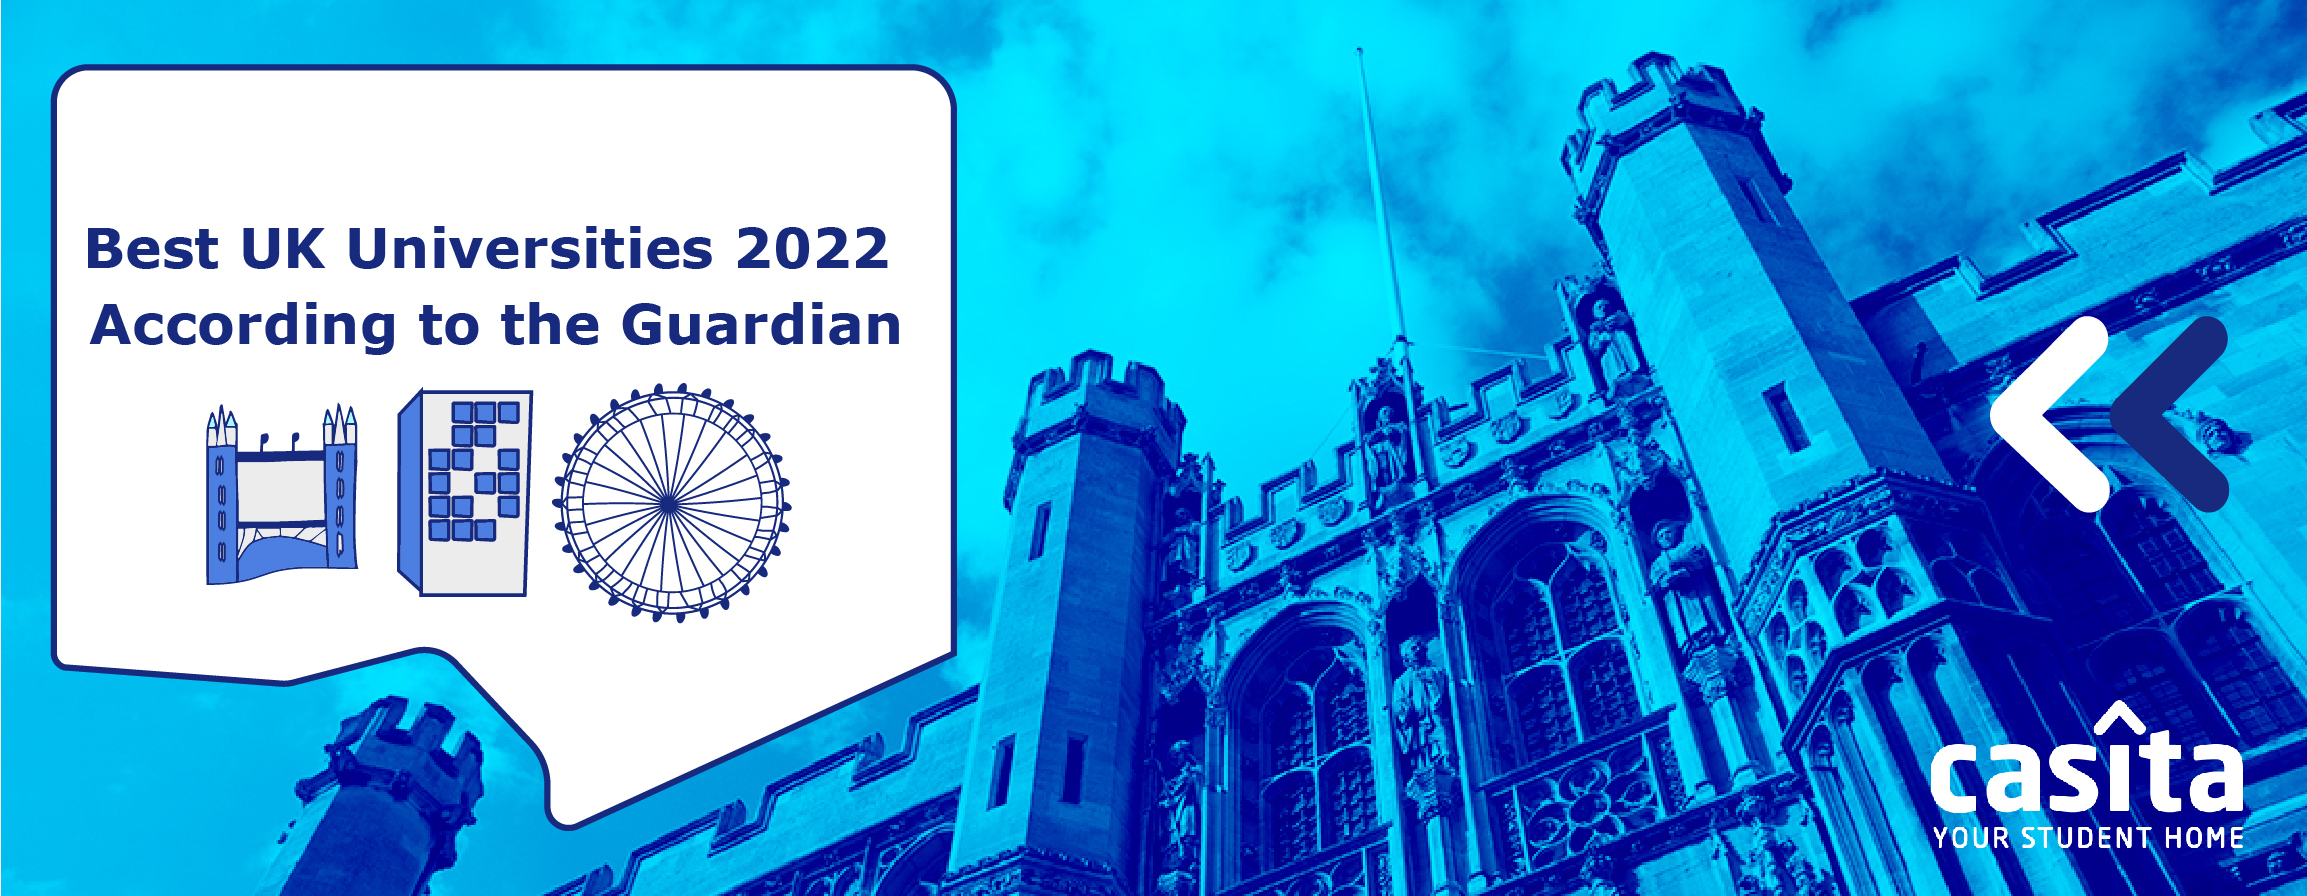 The Guardian Best UK Universities 2022